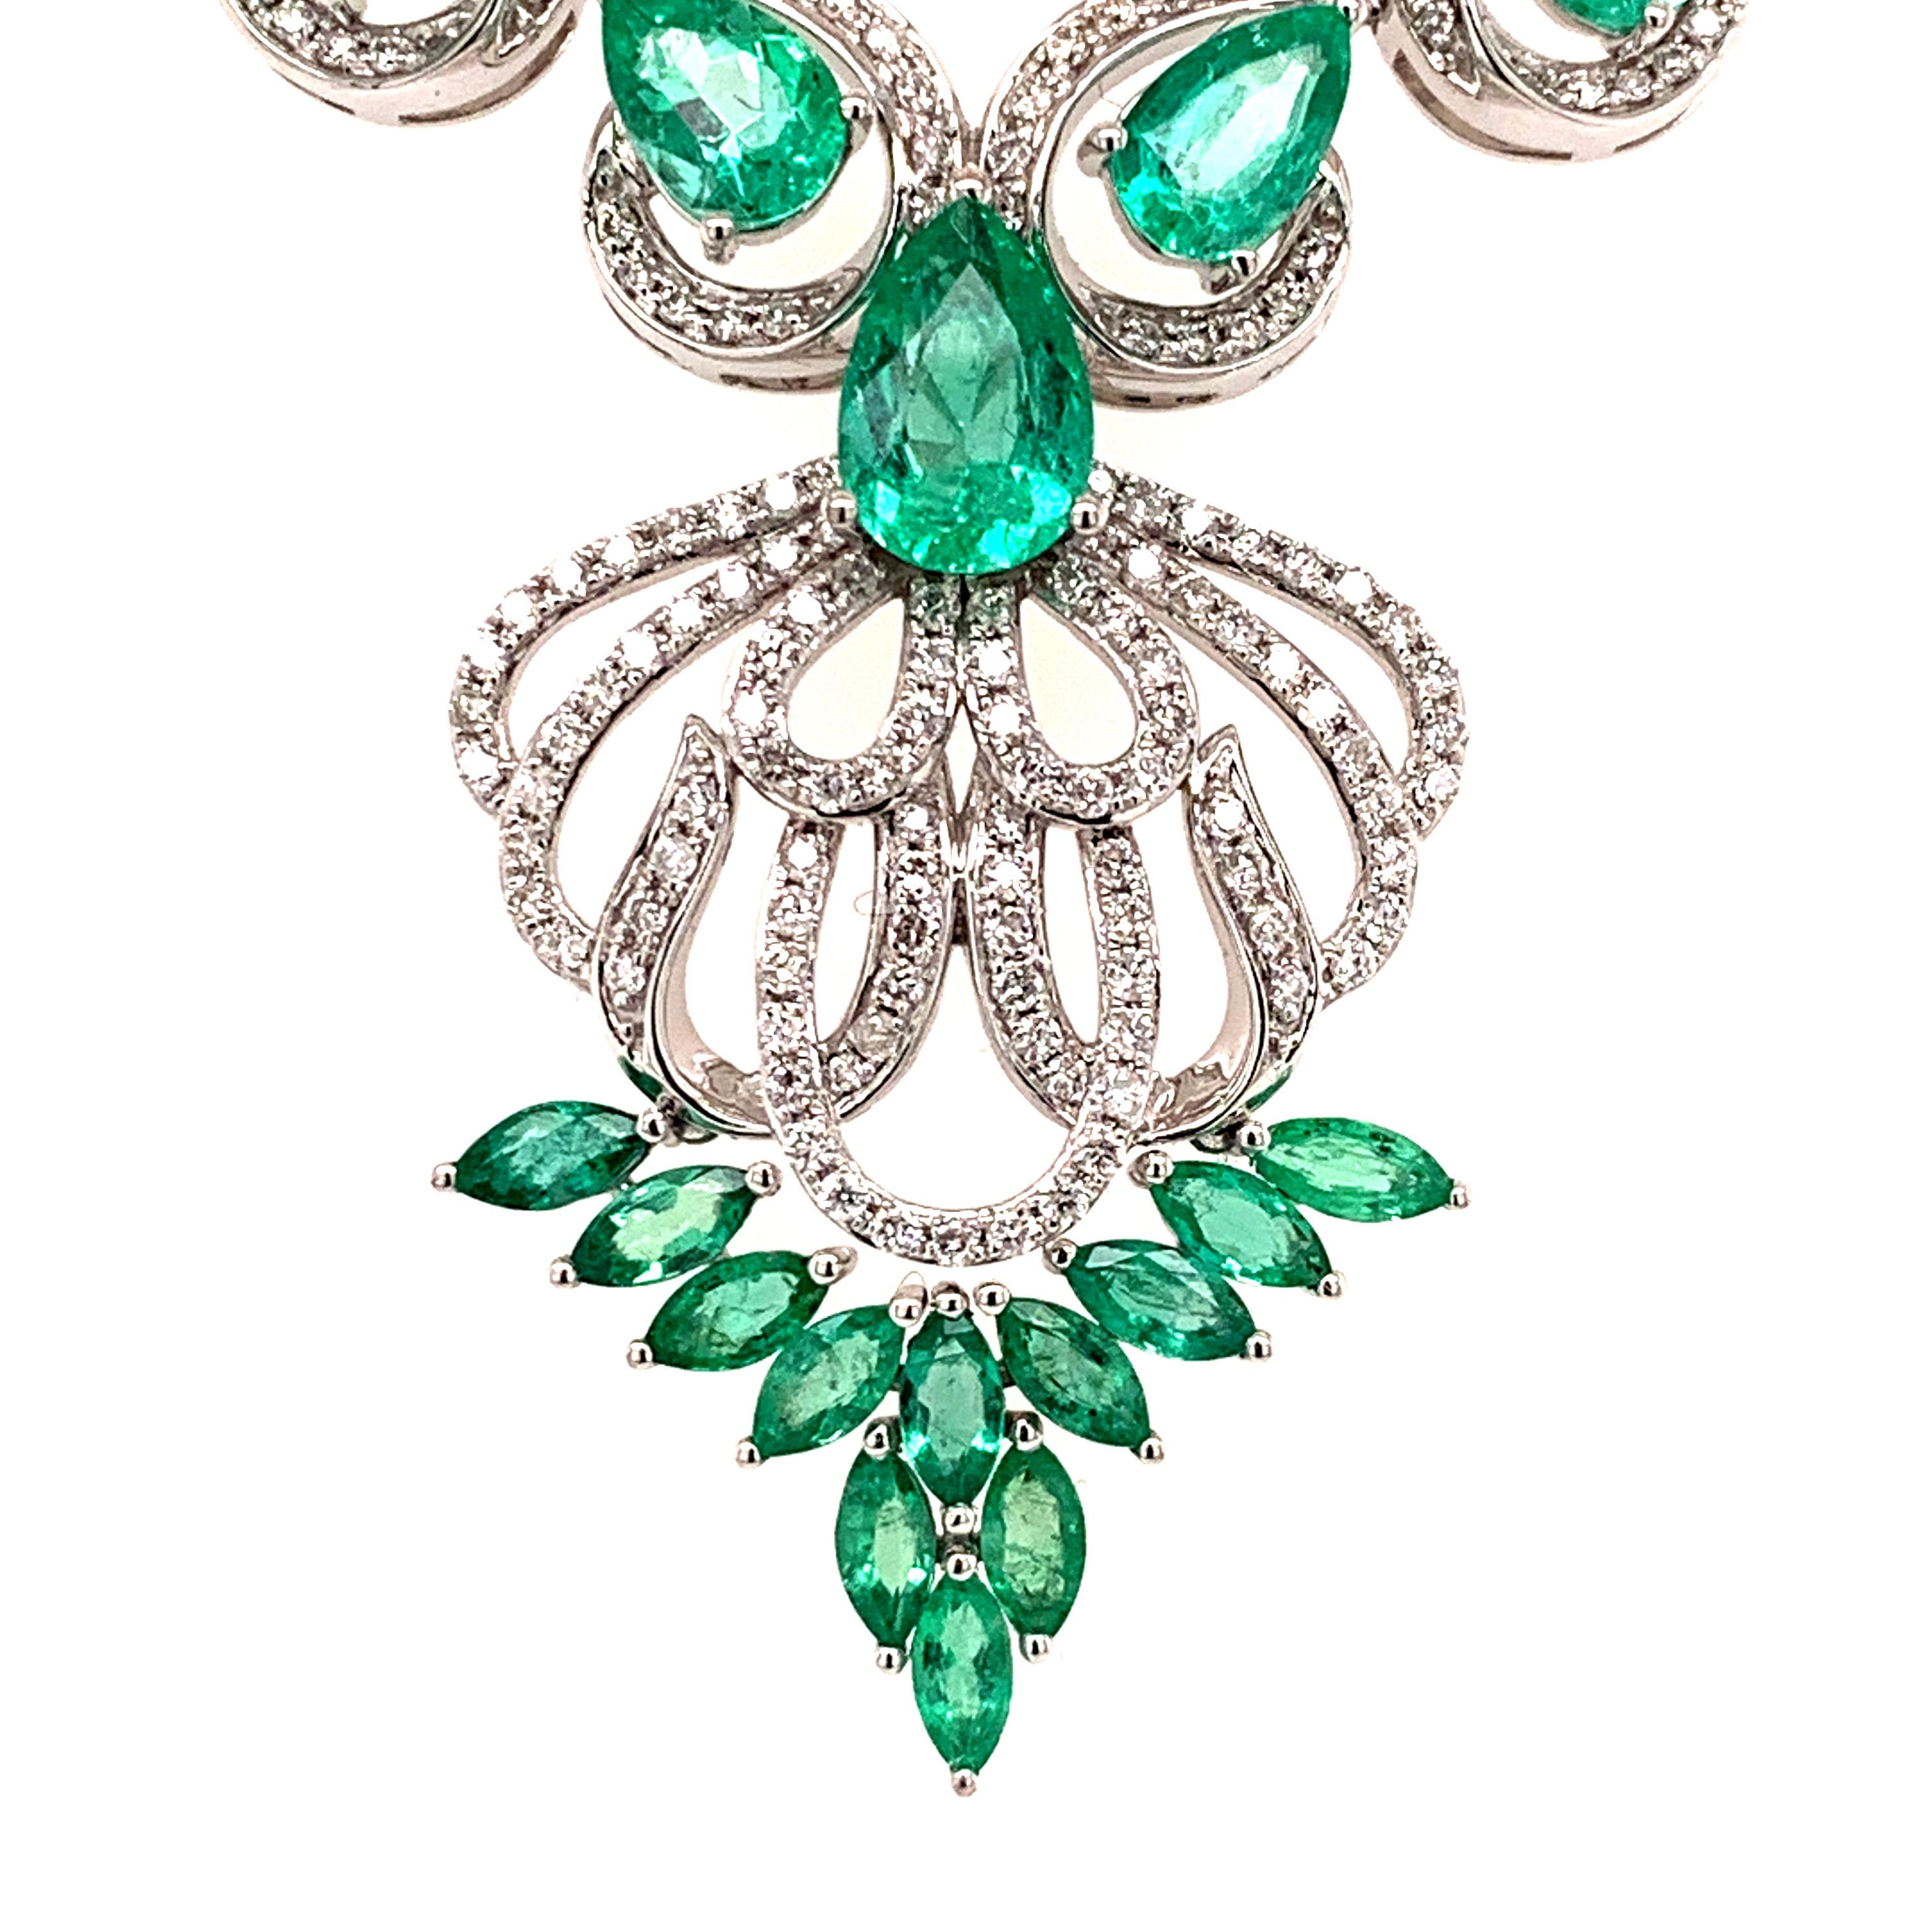 Contemporary 5.17 Carat Emerald Diamond Pendant Necklace